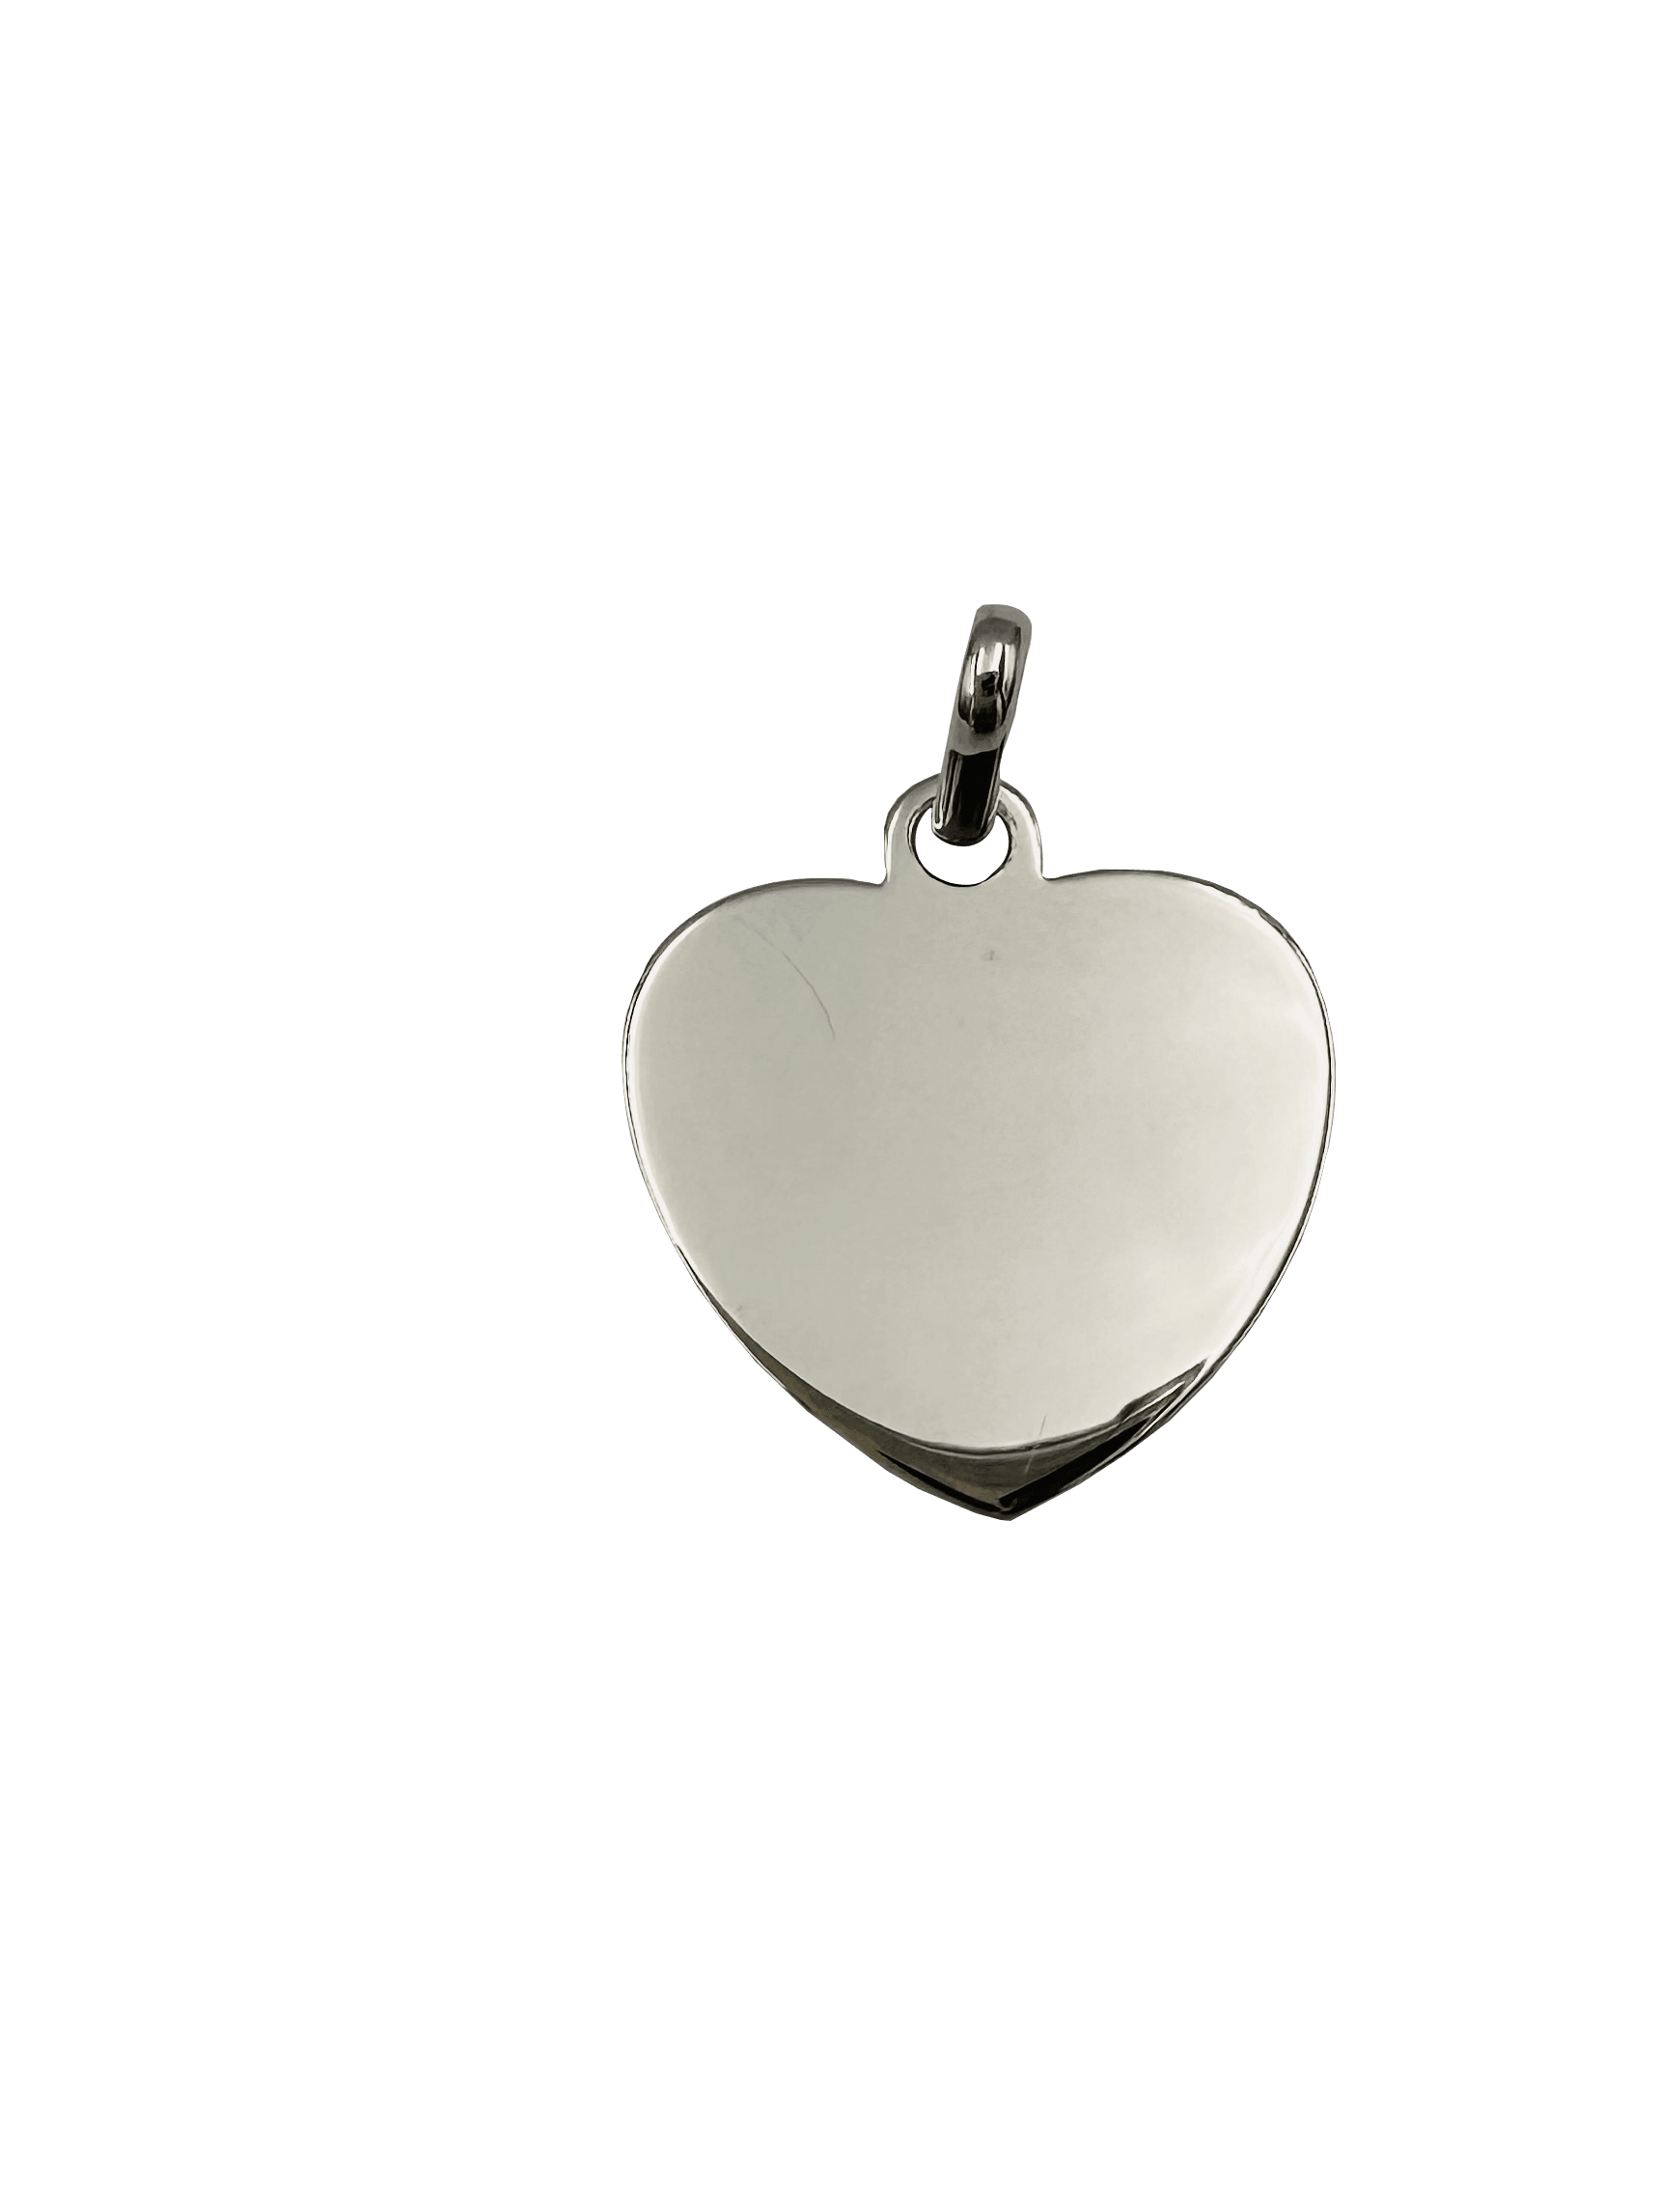 Pendentif ou jeton "Tendre coeur" en argent 925 rhodié, finition polie brillante, format moyen - Maison Gabriel